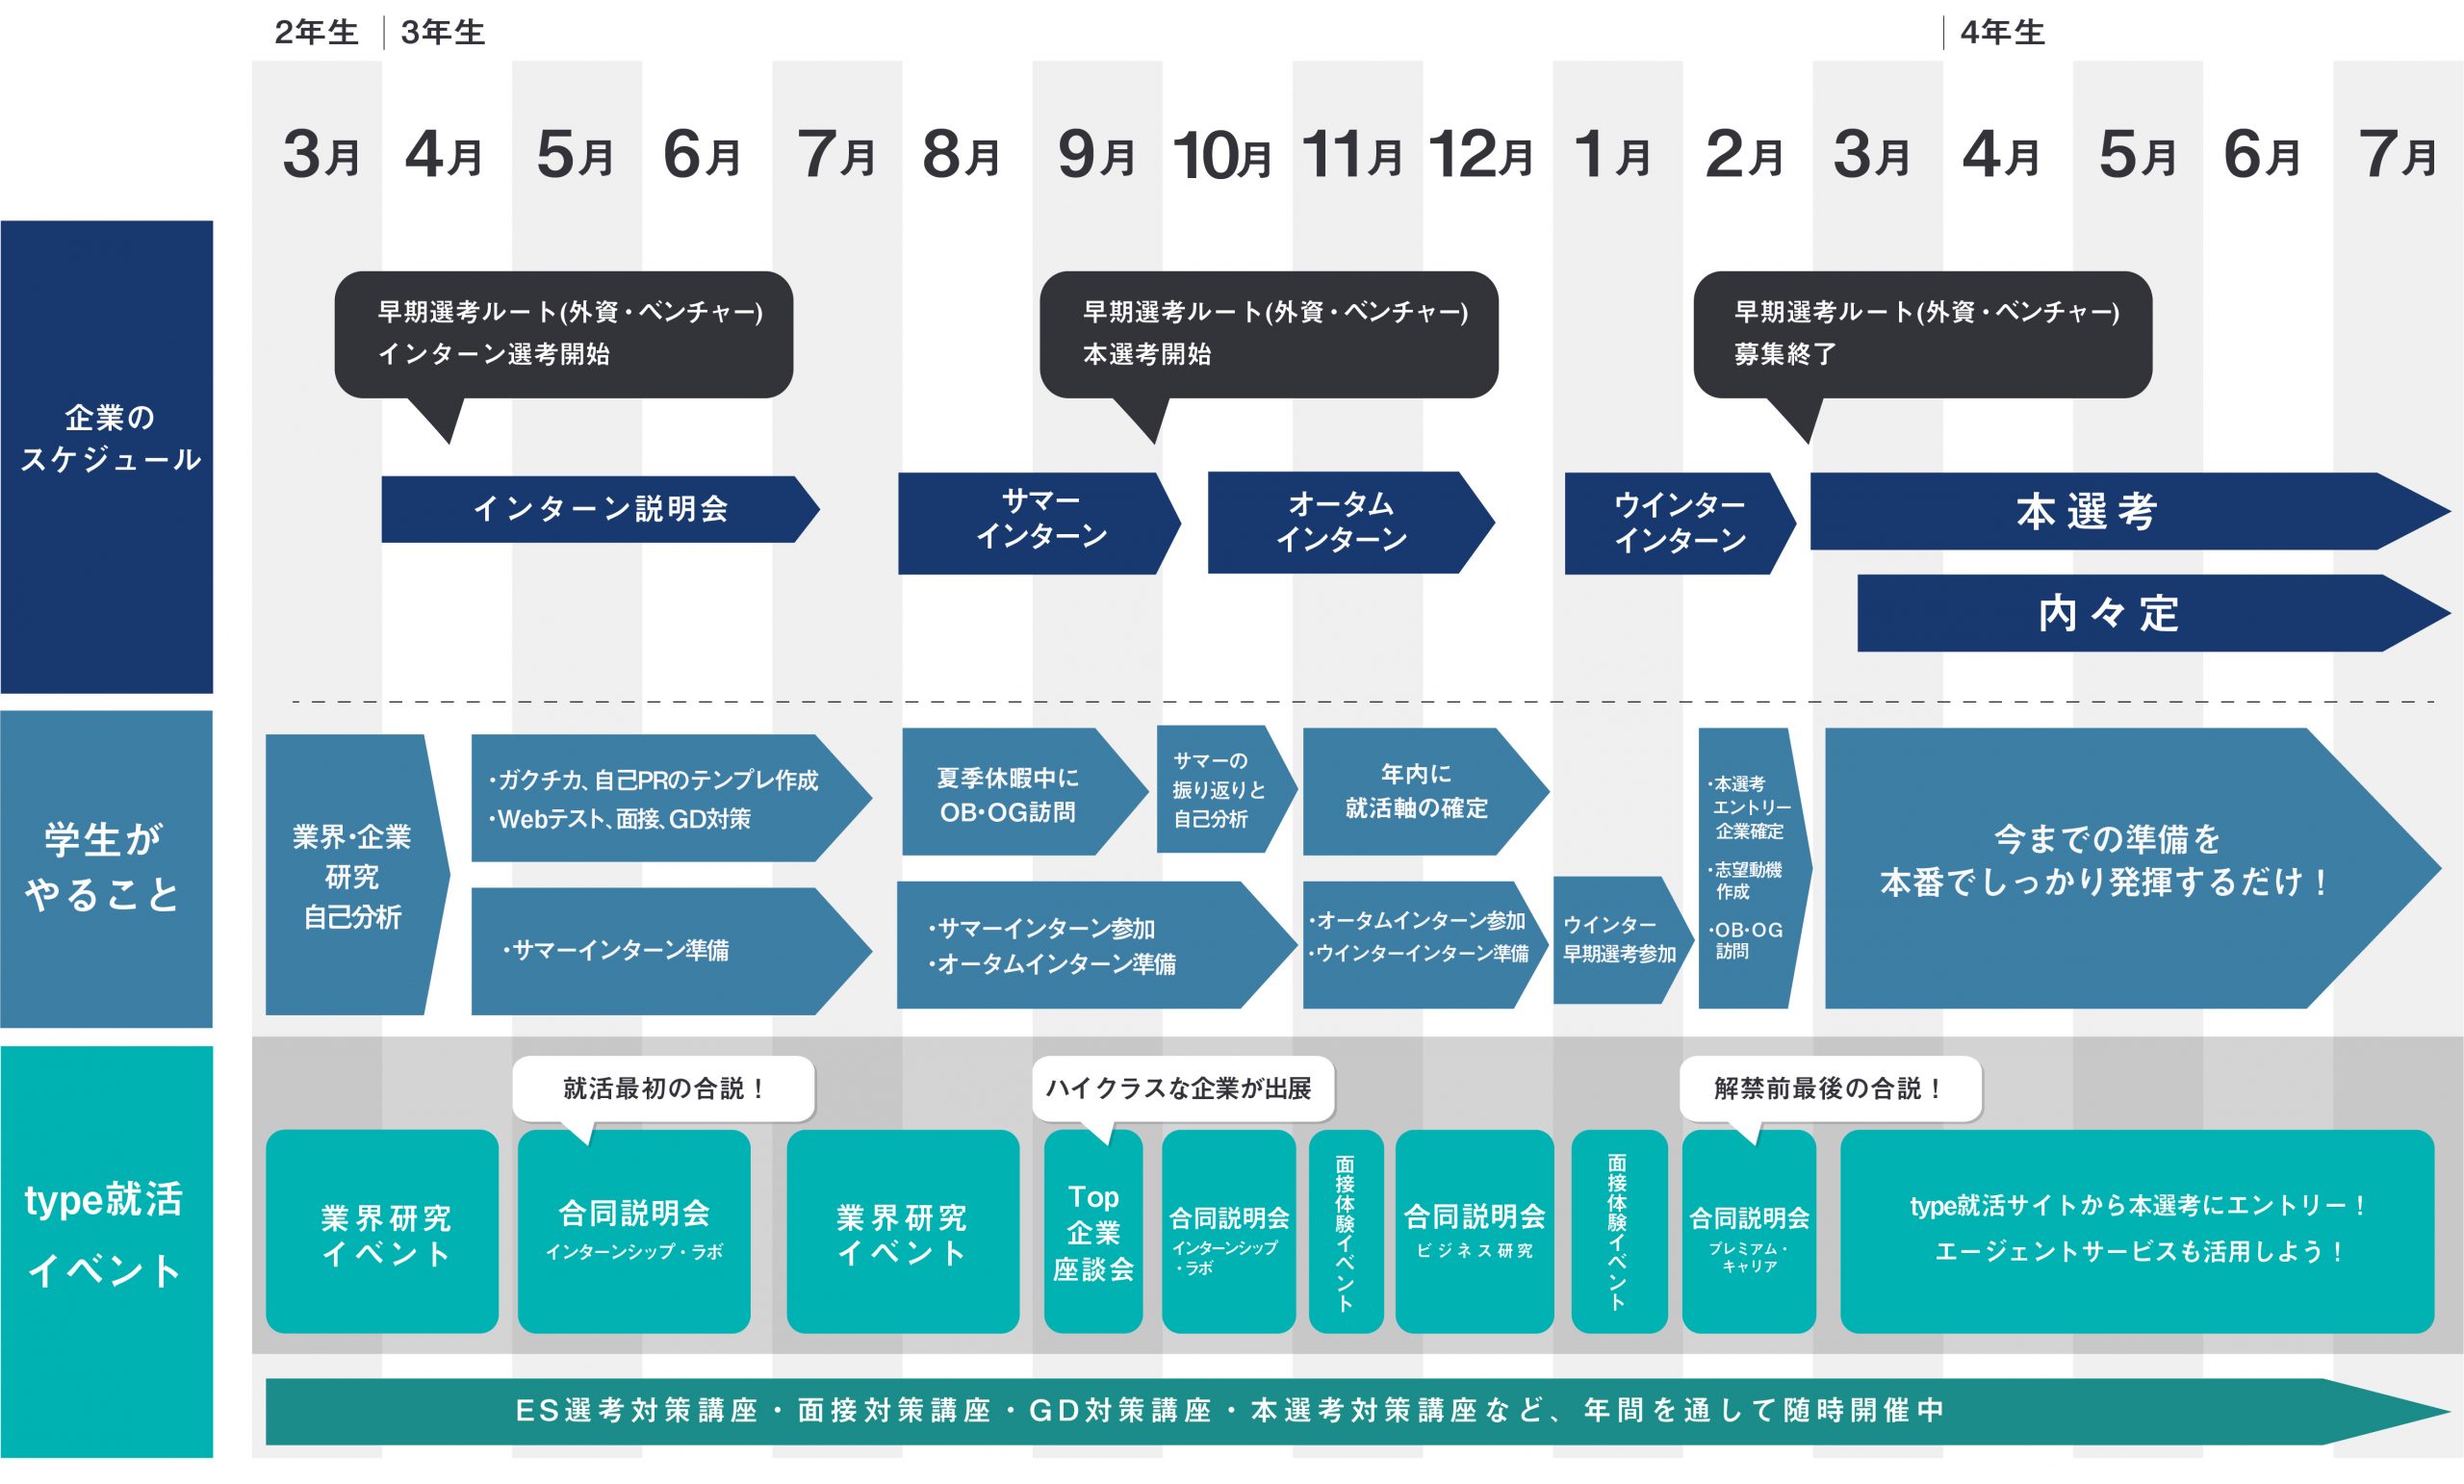 日系企業を志望している学生の就活スケジュール